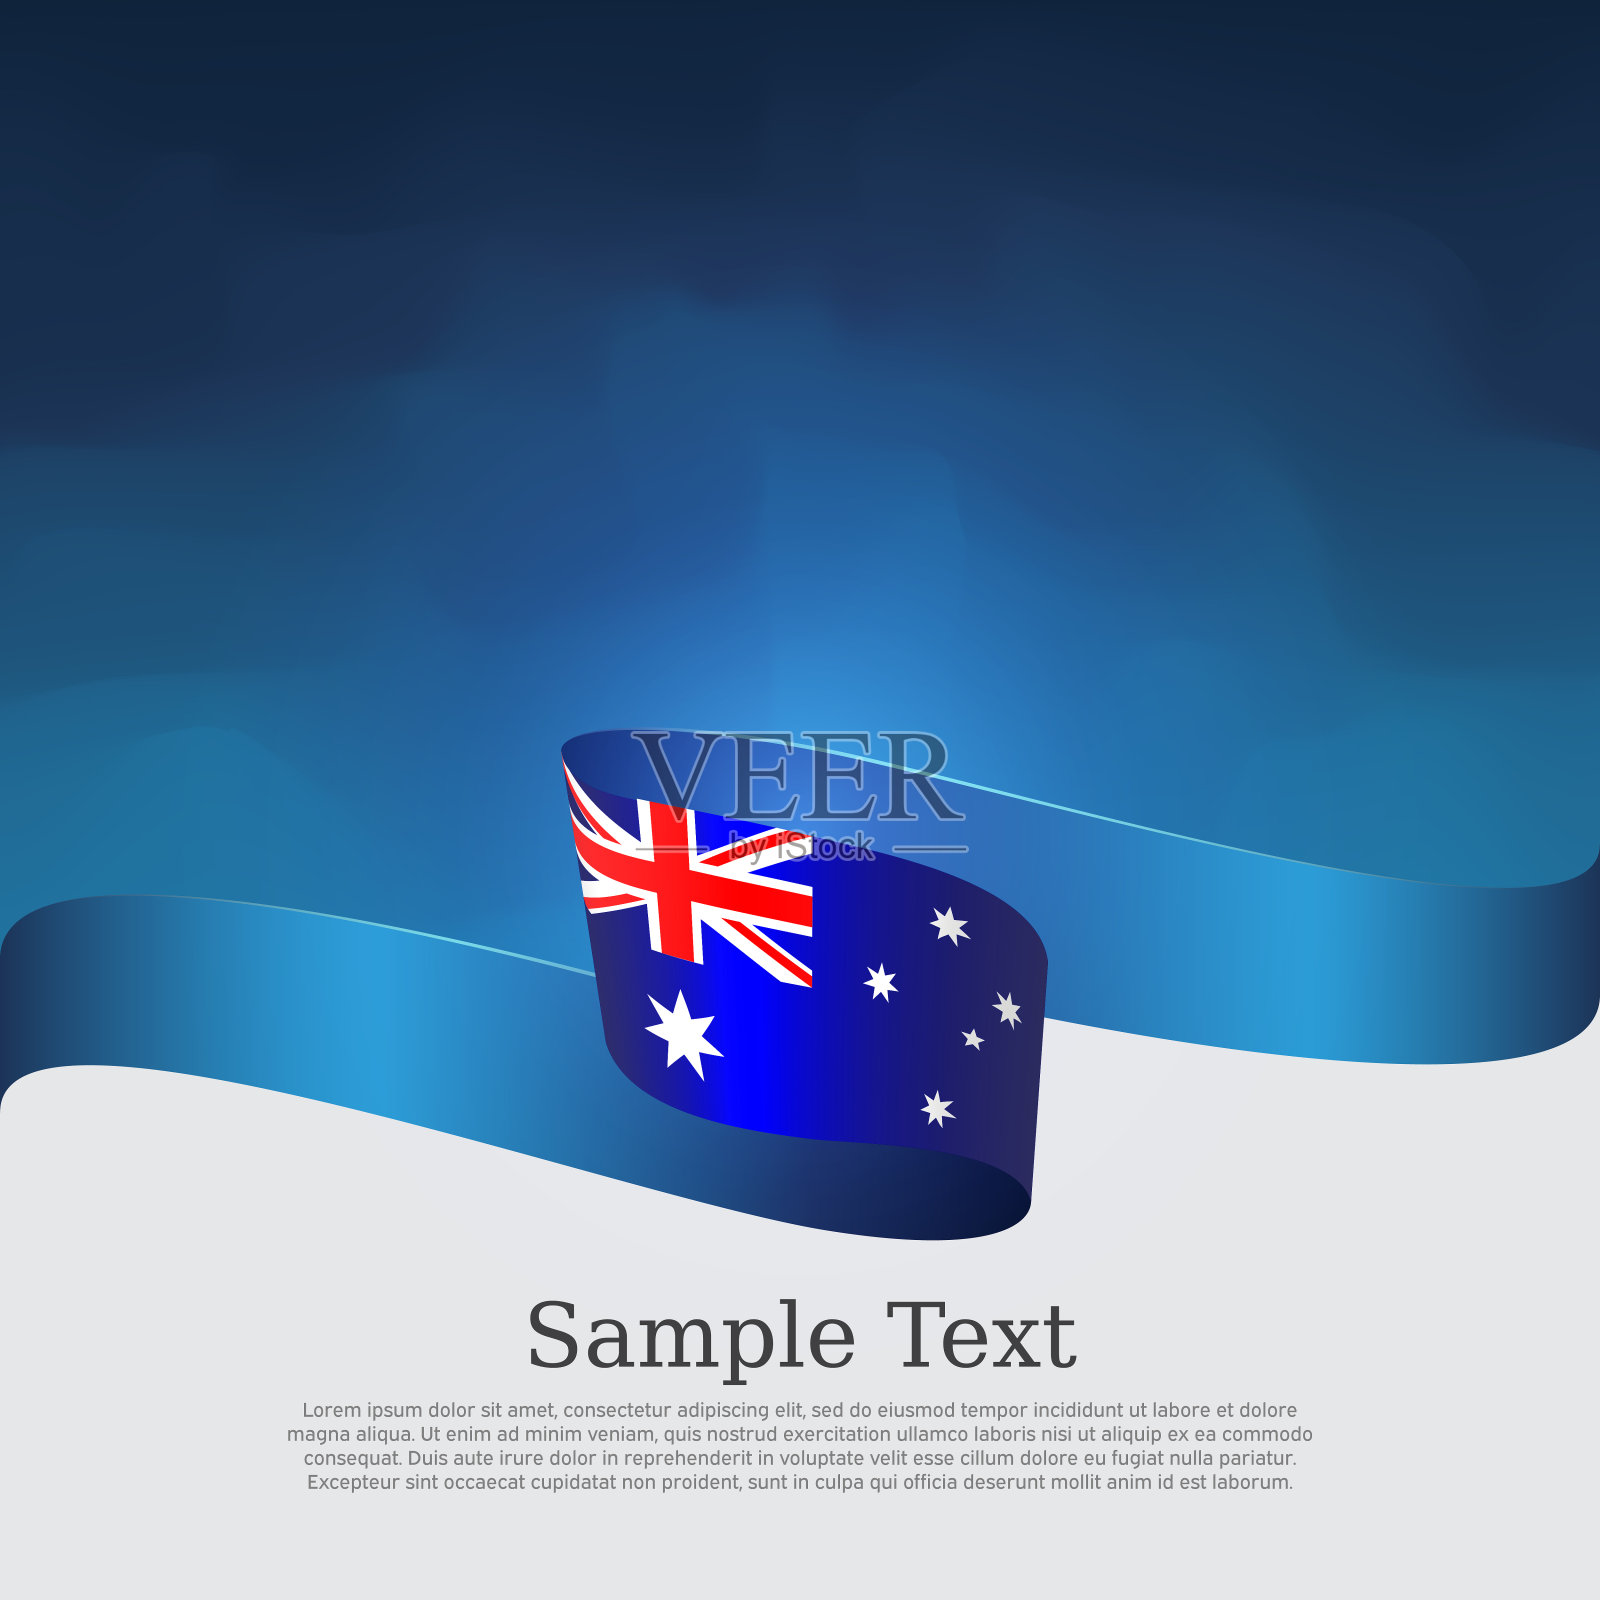 新西兰国旗图片_新西兰国旗图片大全_全景图片